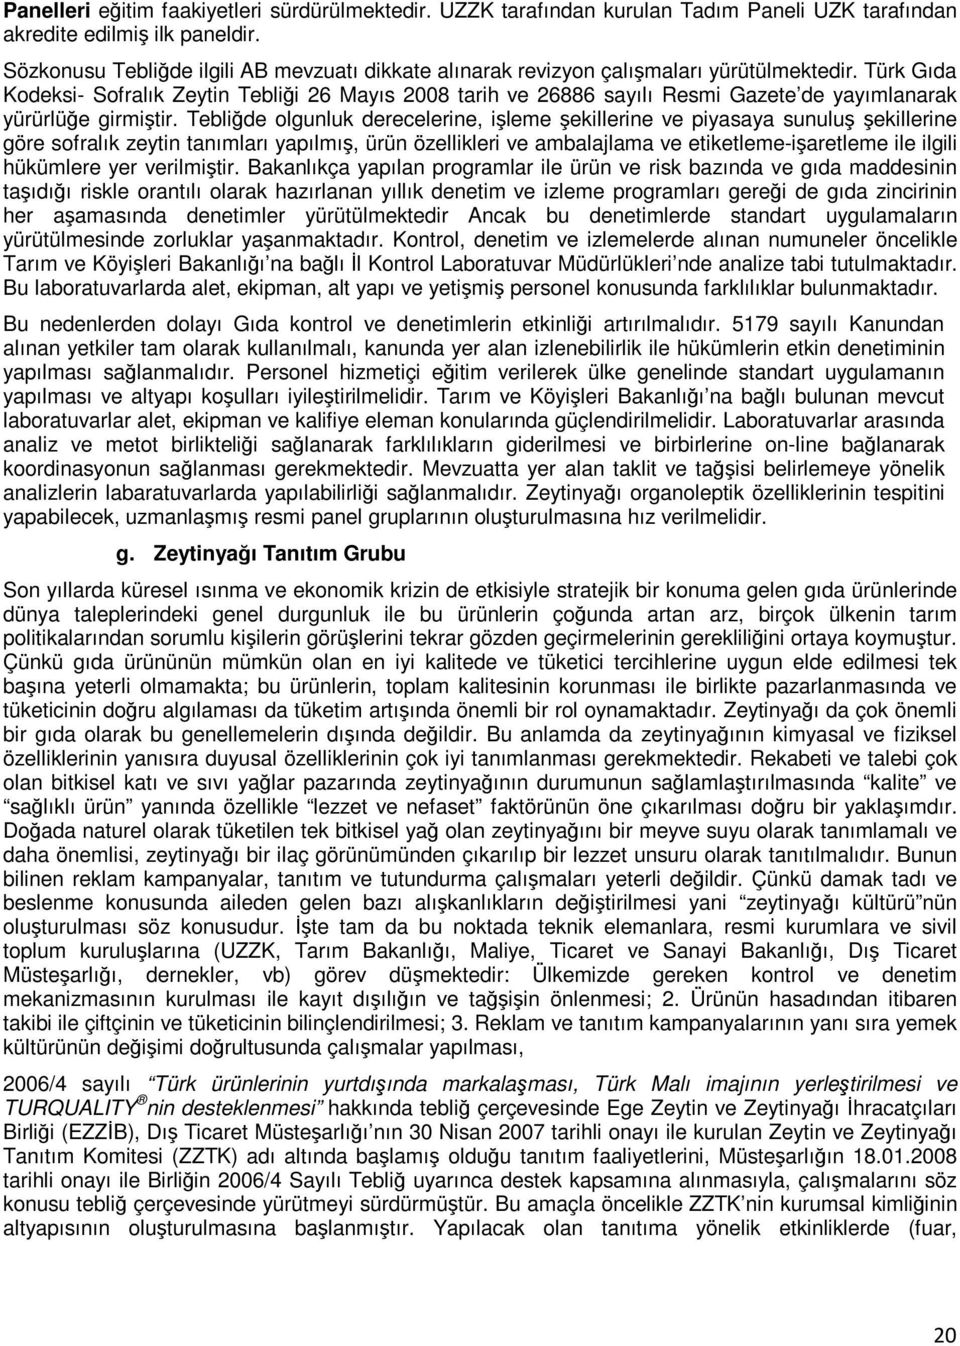 Türk Gıda Kodeksi- Sofralık Zeytin Tebliği 26 Mayıs 2008 tarih ve 26886 sayılı Resmi Gazete de yayımlanarak yürürlüğe girmiştir.